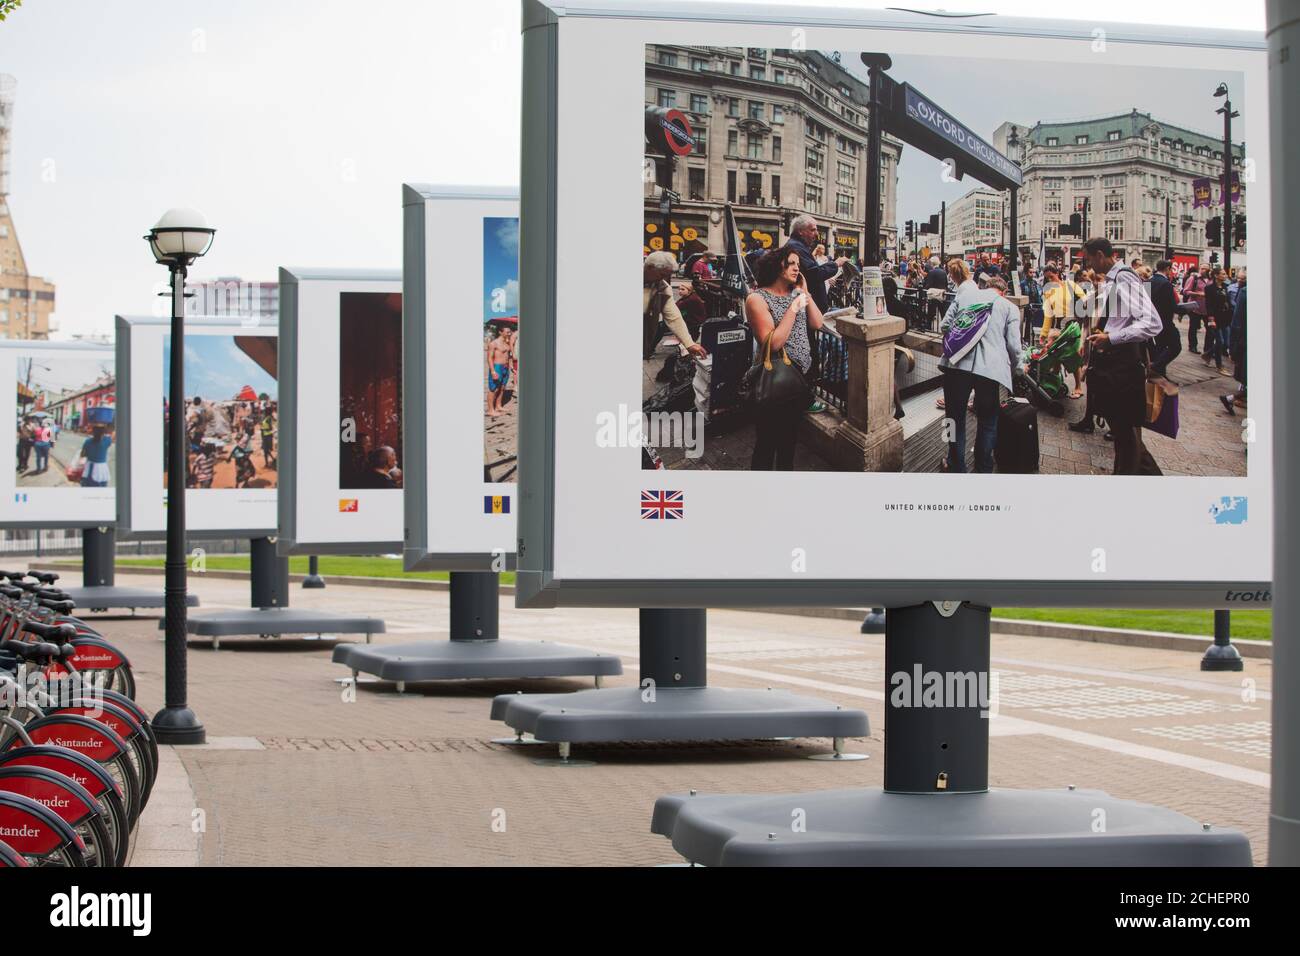 Les membres du public regardent des images des capitales du monde entier par le photographe Jeroen Swolfs lors du lancement britannique de l'exposition de photographie Streets of the World à Canary Wharf, Londres. Banque D'Images